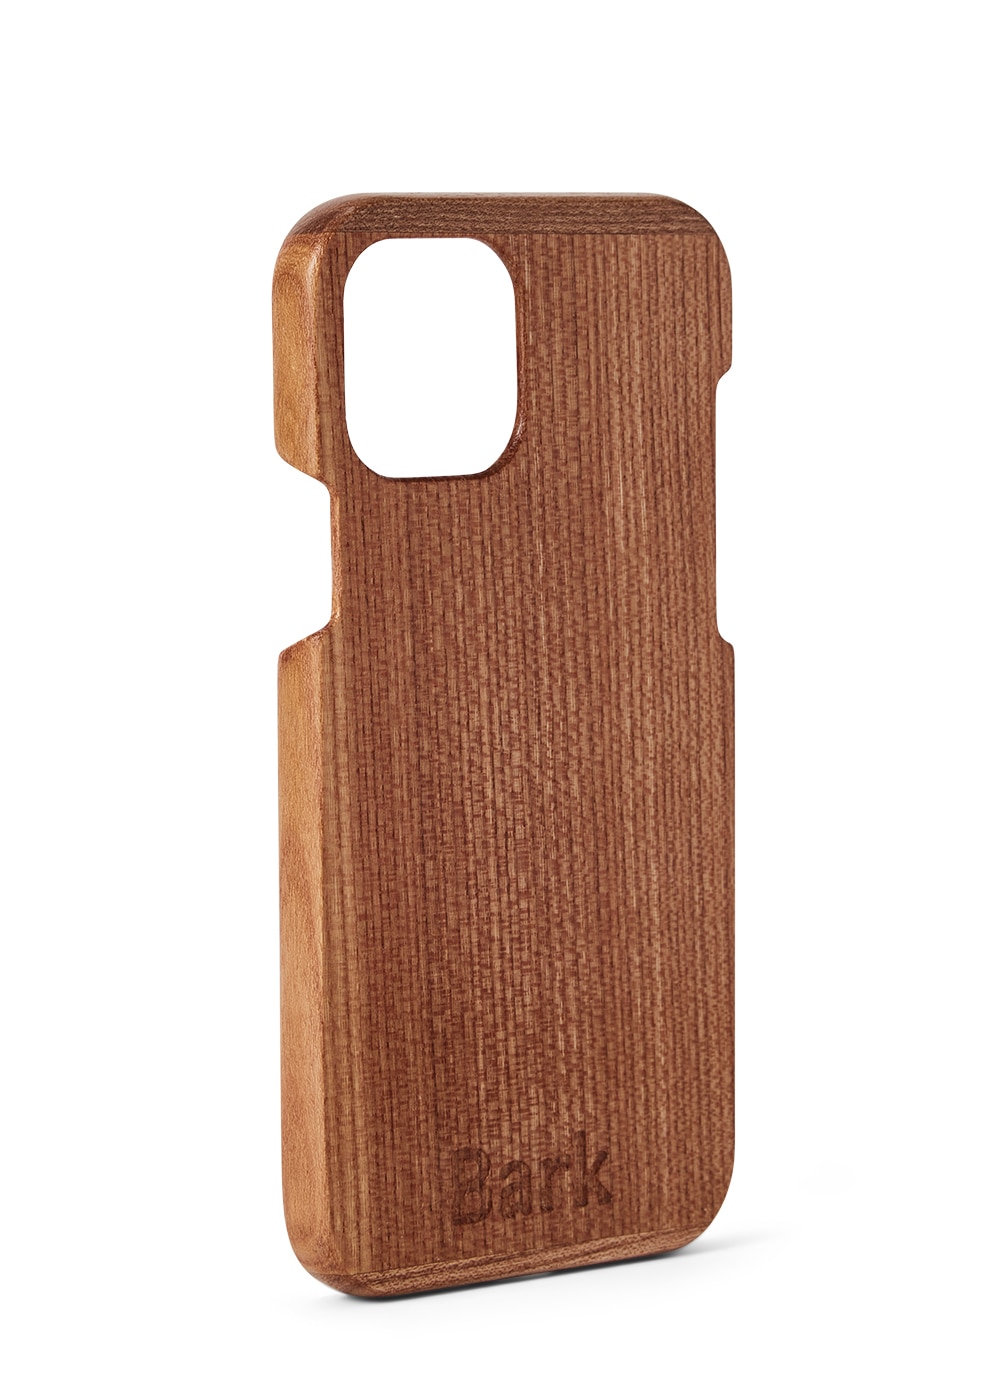 iPhone 12 Pro custodia in legno di latifoglia svedese - Alm